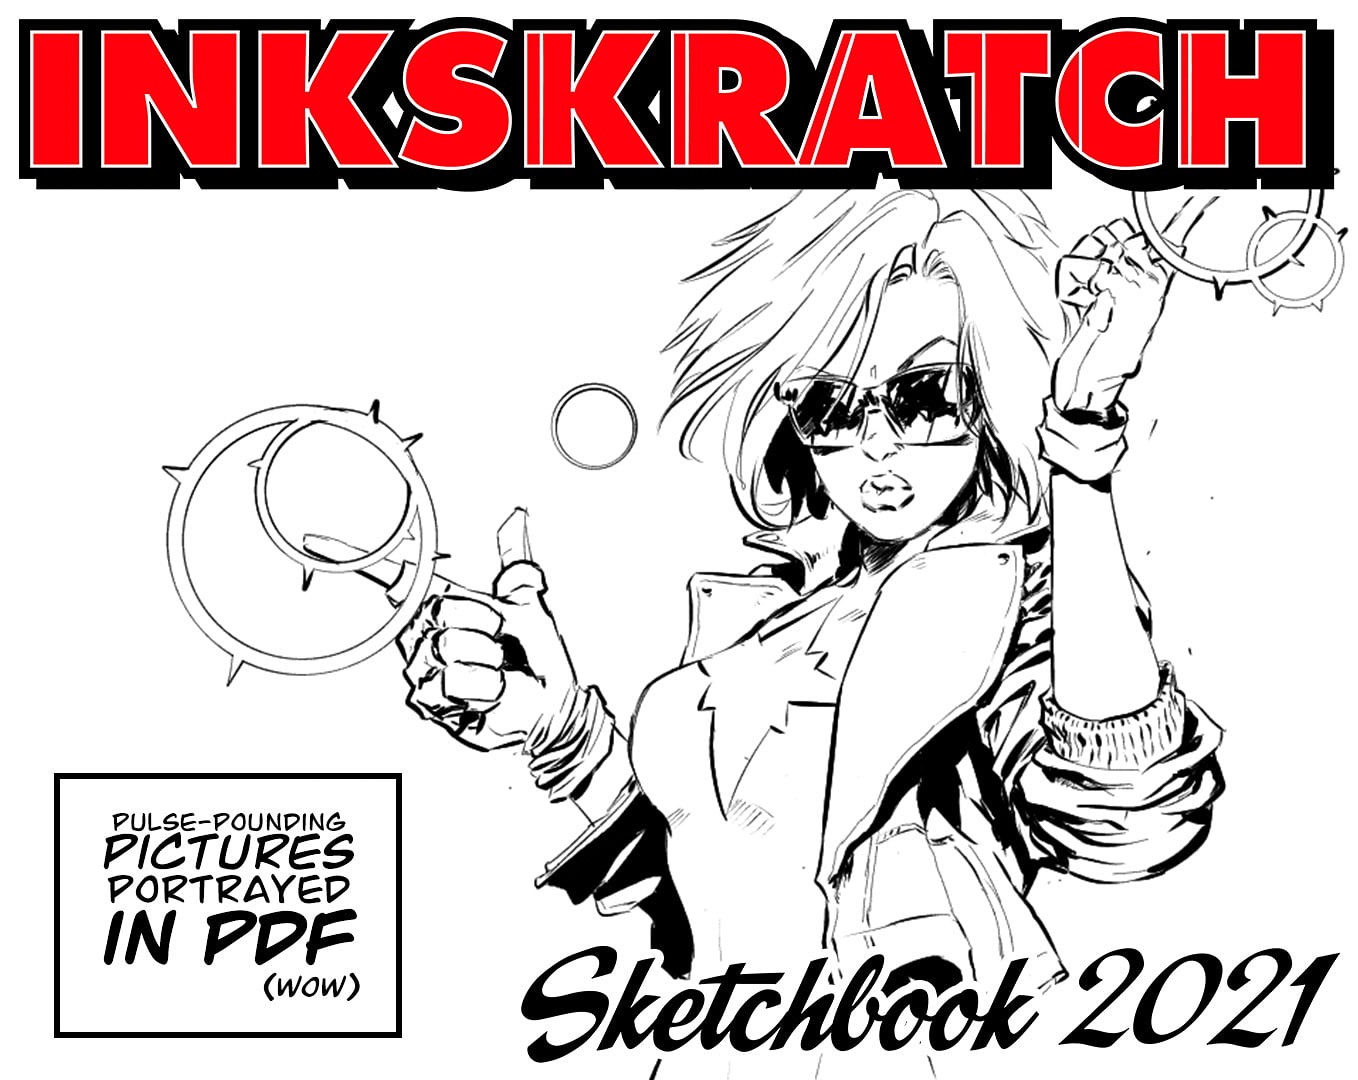 Inkskratch Sketchbook: 2021